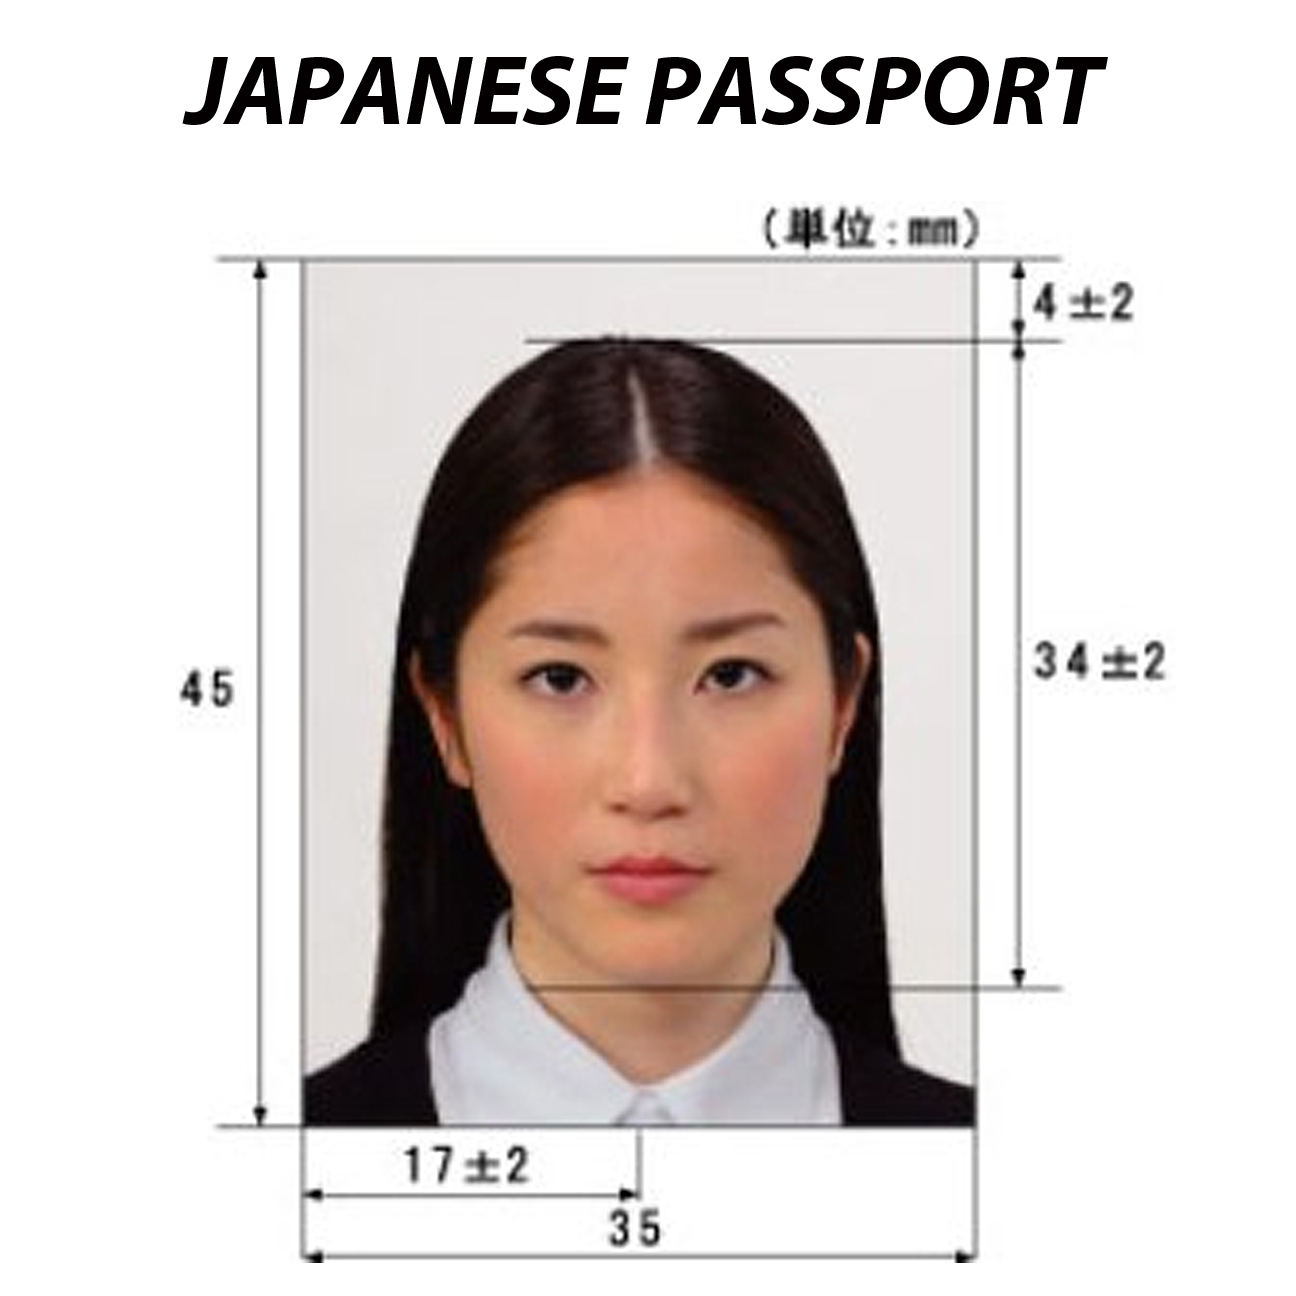 Фото на визу в оаэ размер